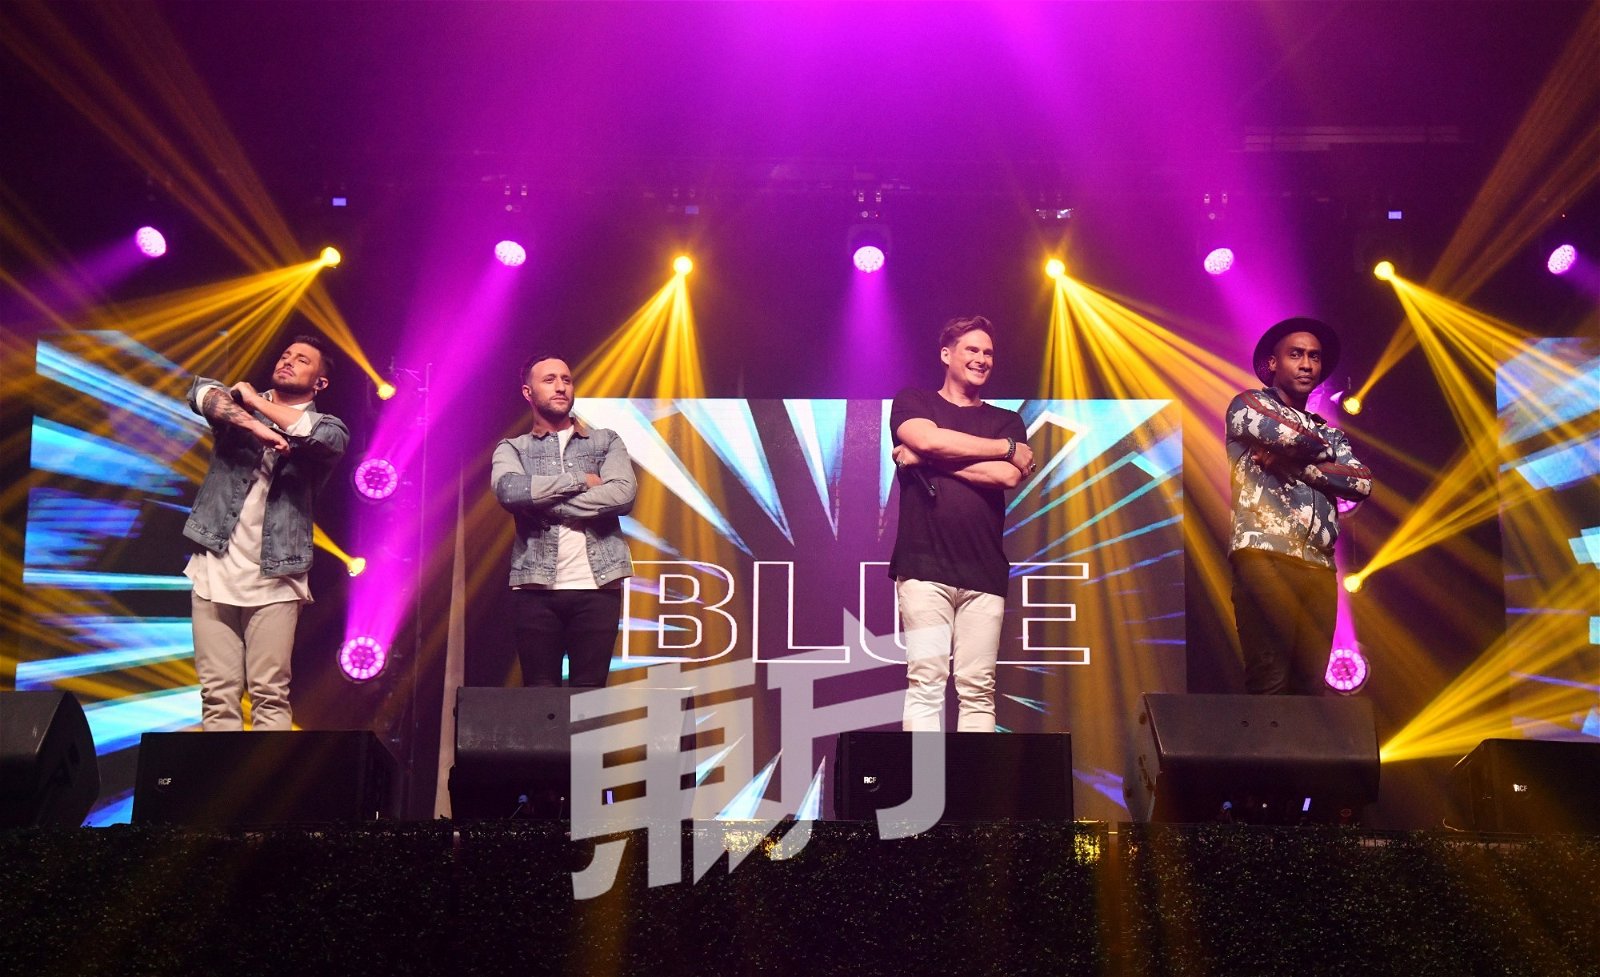 BLUE在离开舞台前带来《All Rise》，歌曲前奏一响起，尖叫声再次四起。